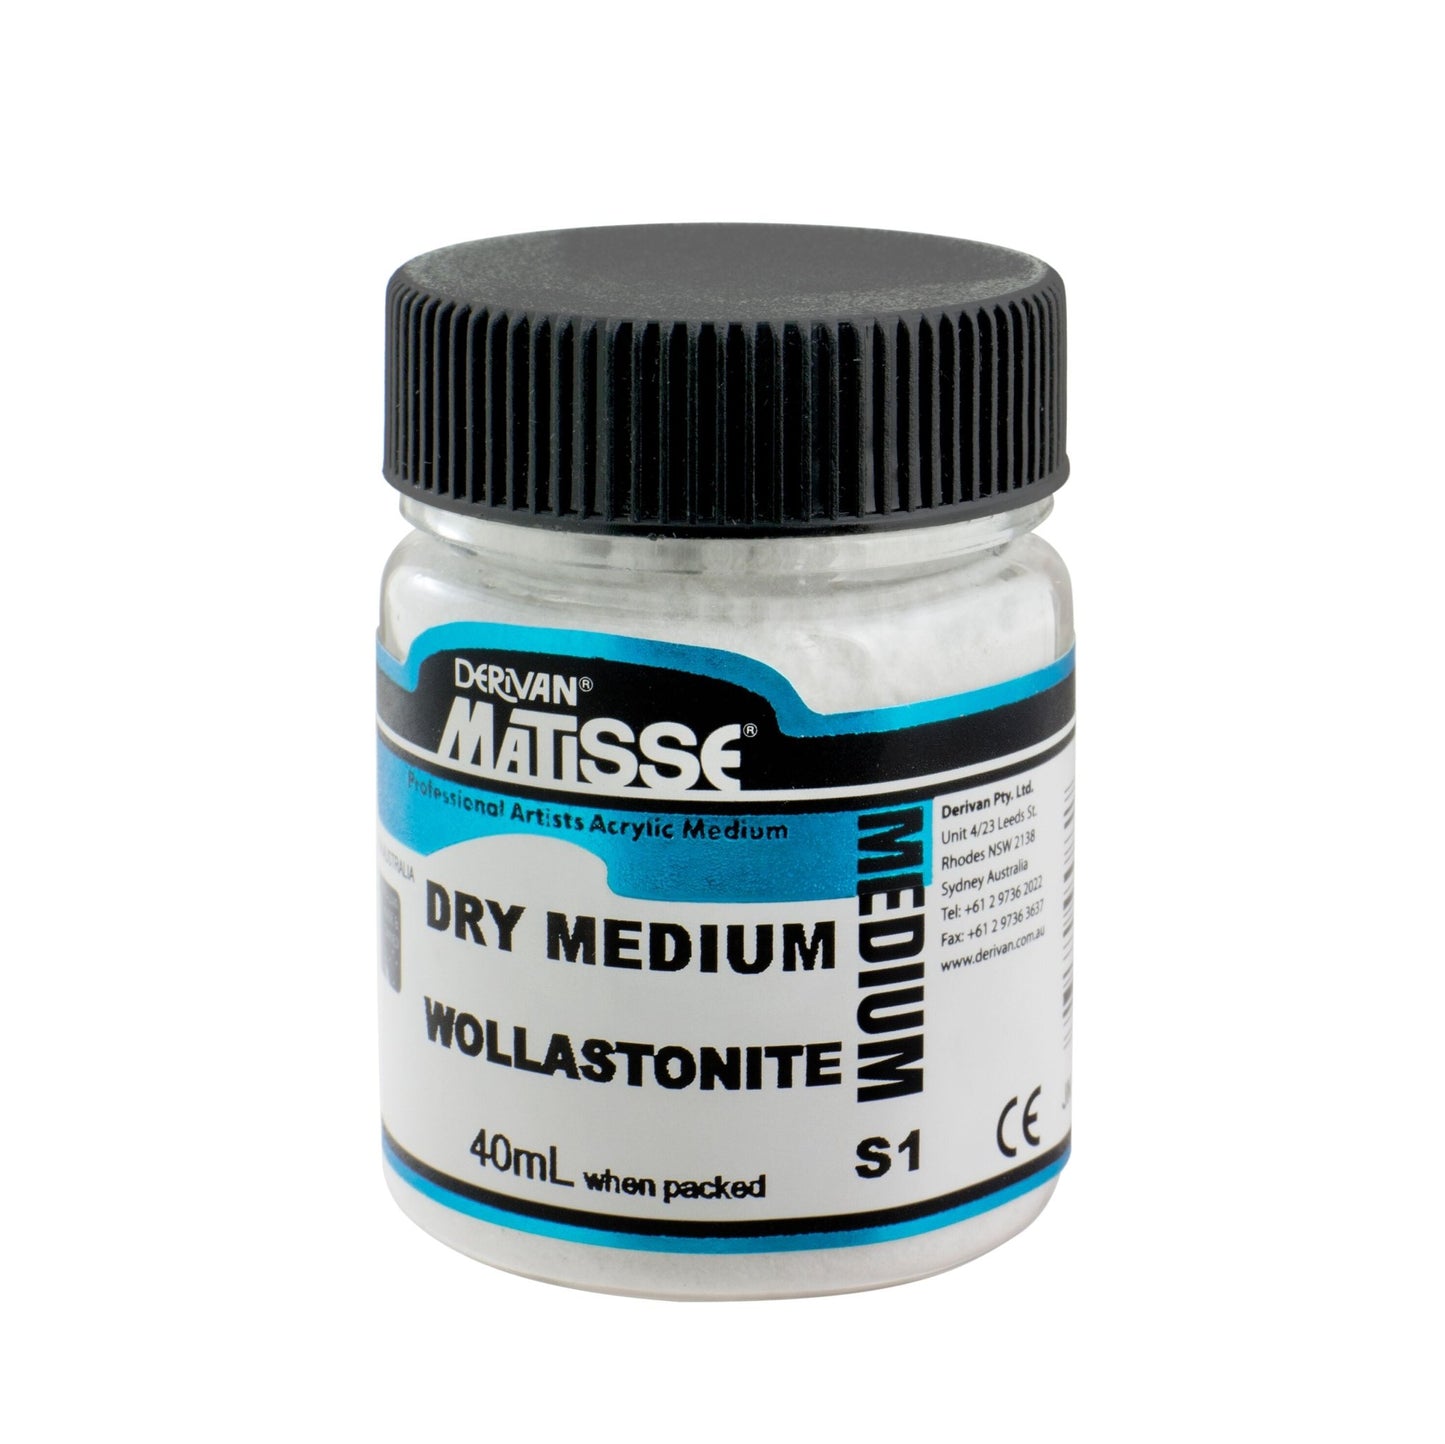 Matisse Dry Medium 40ml Wollastonite - theartshop.com.au